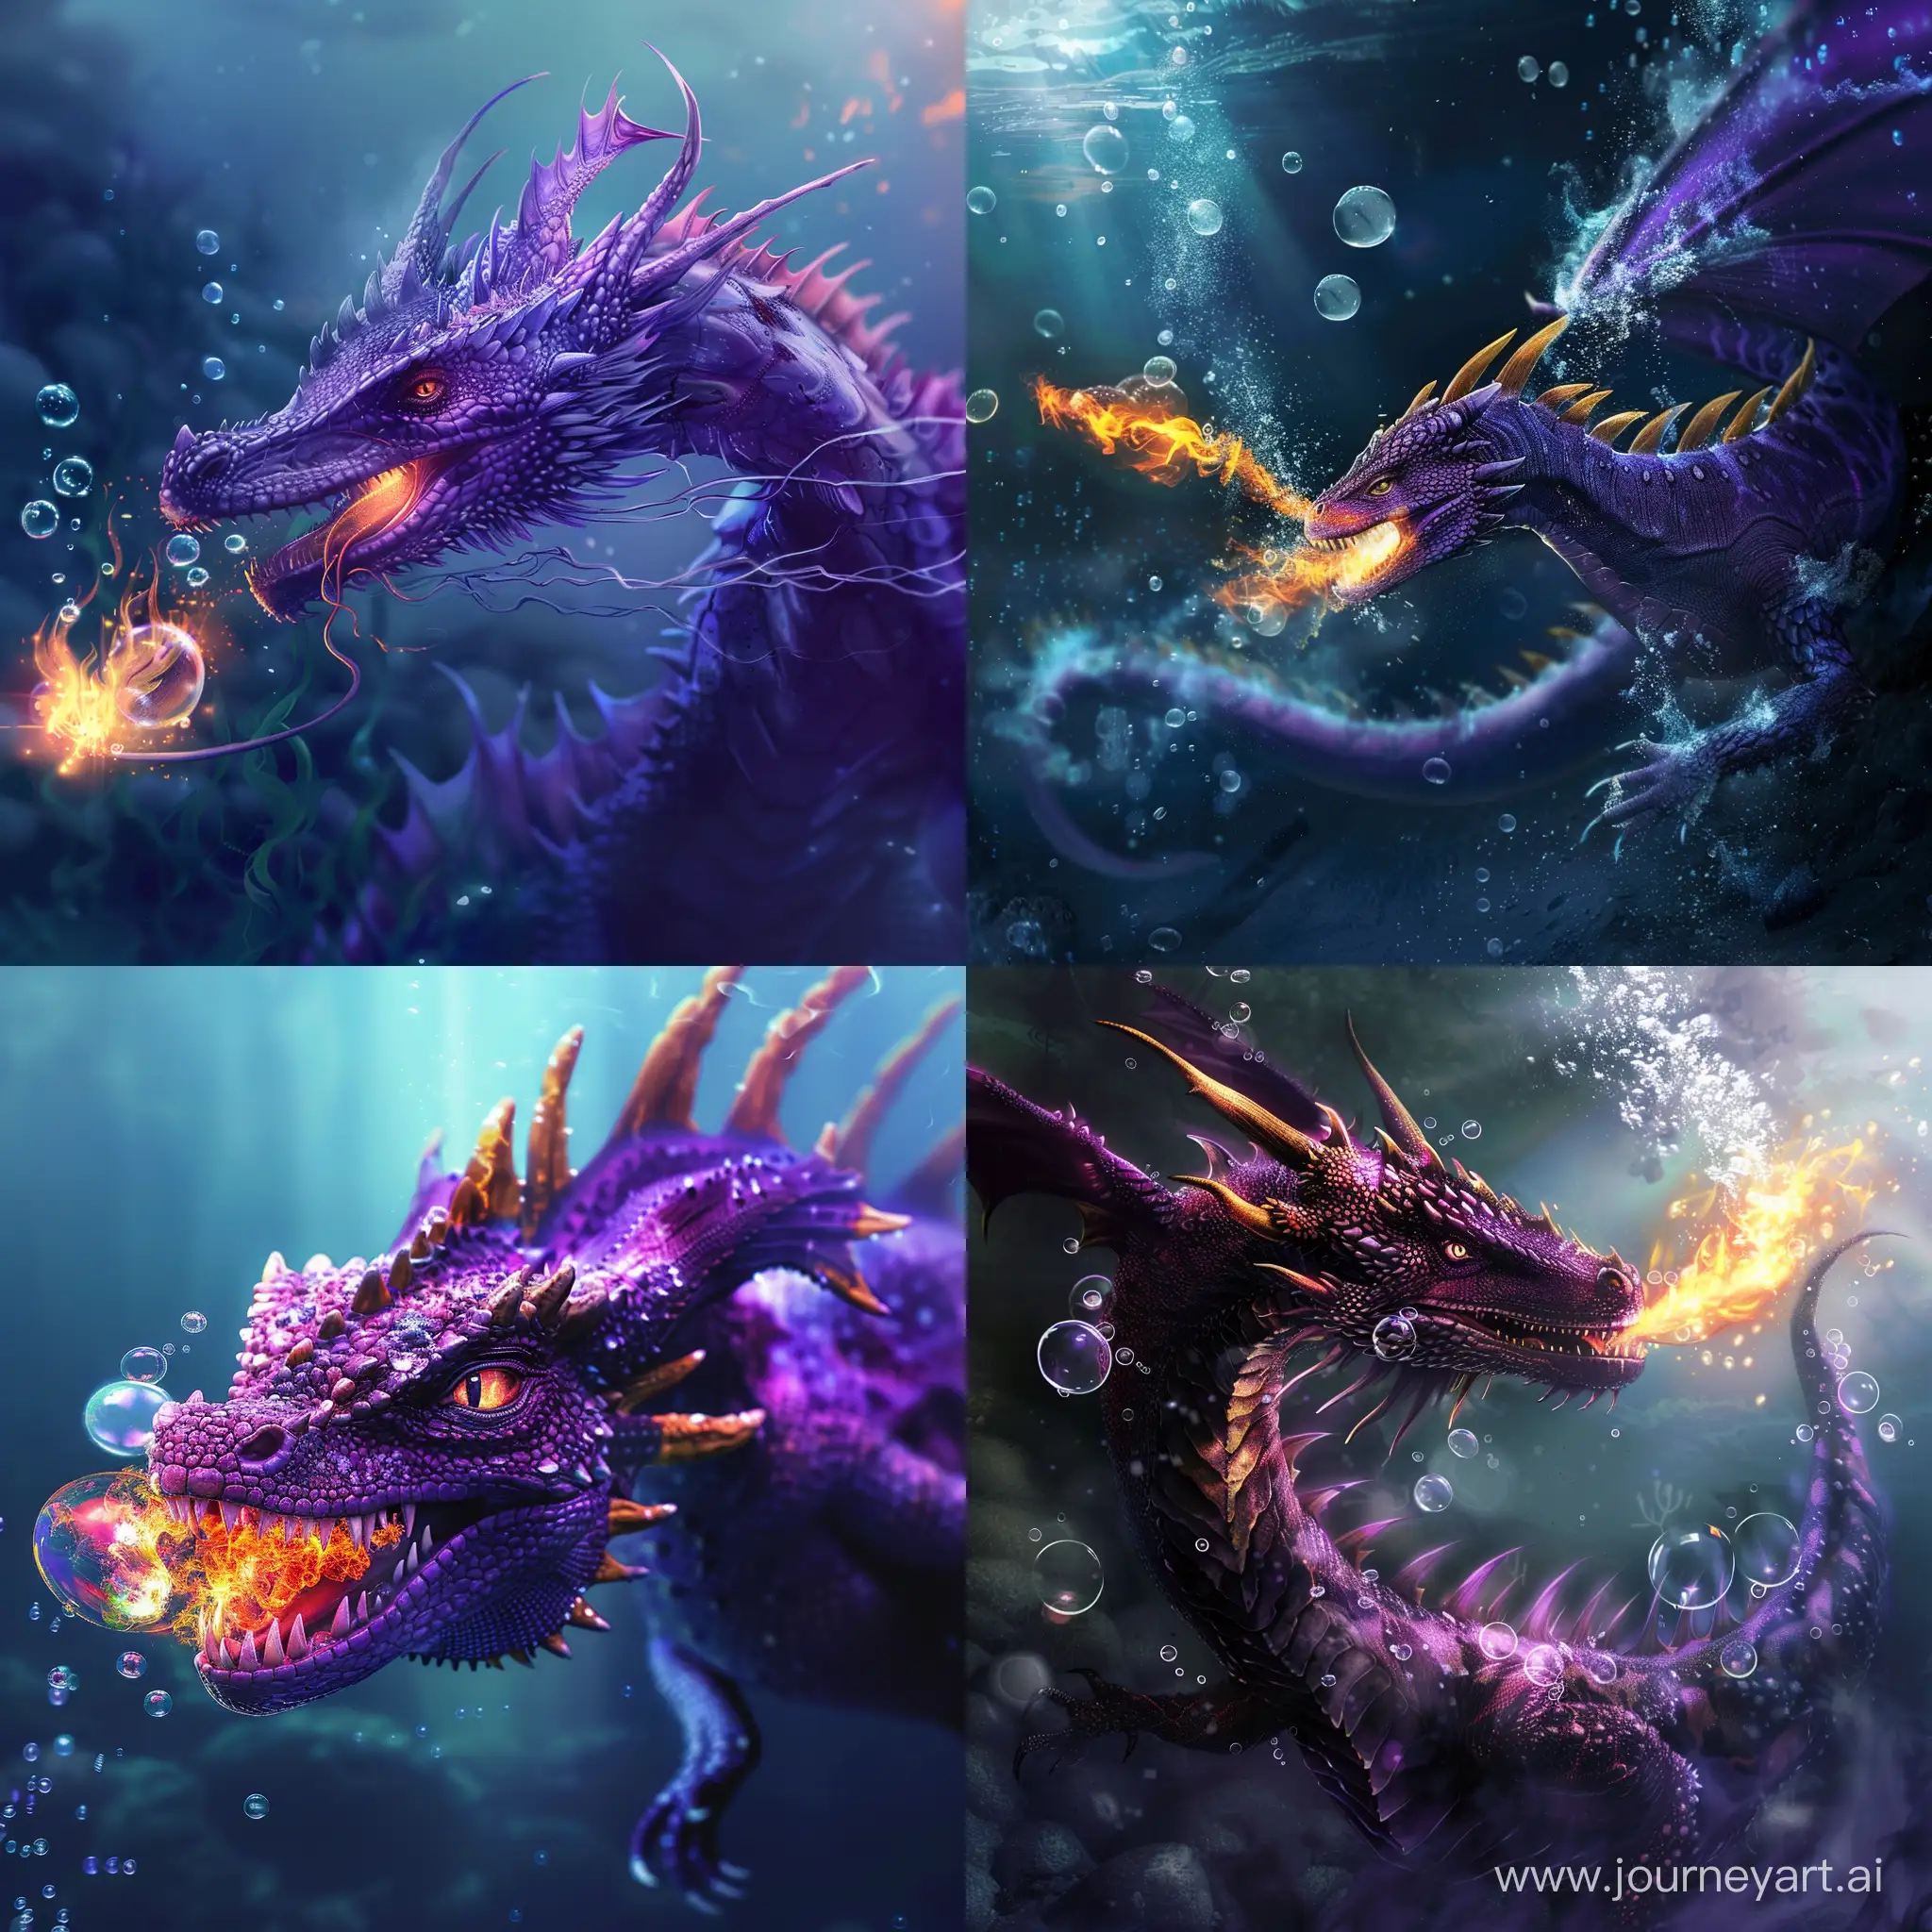 Under water purple sea dragon blowing fire bubbles